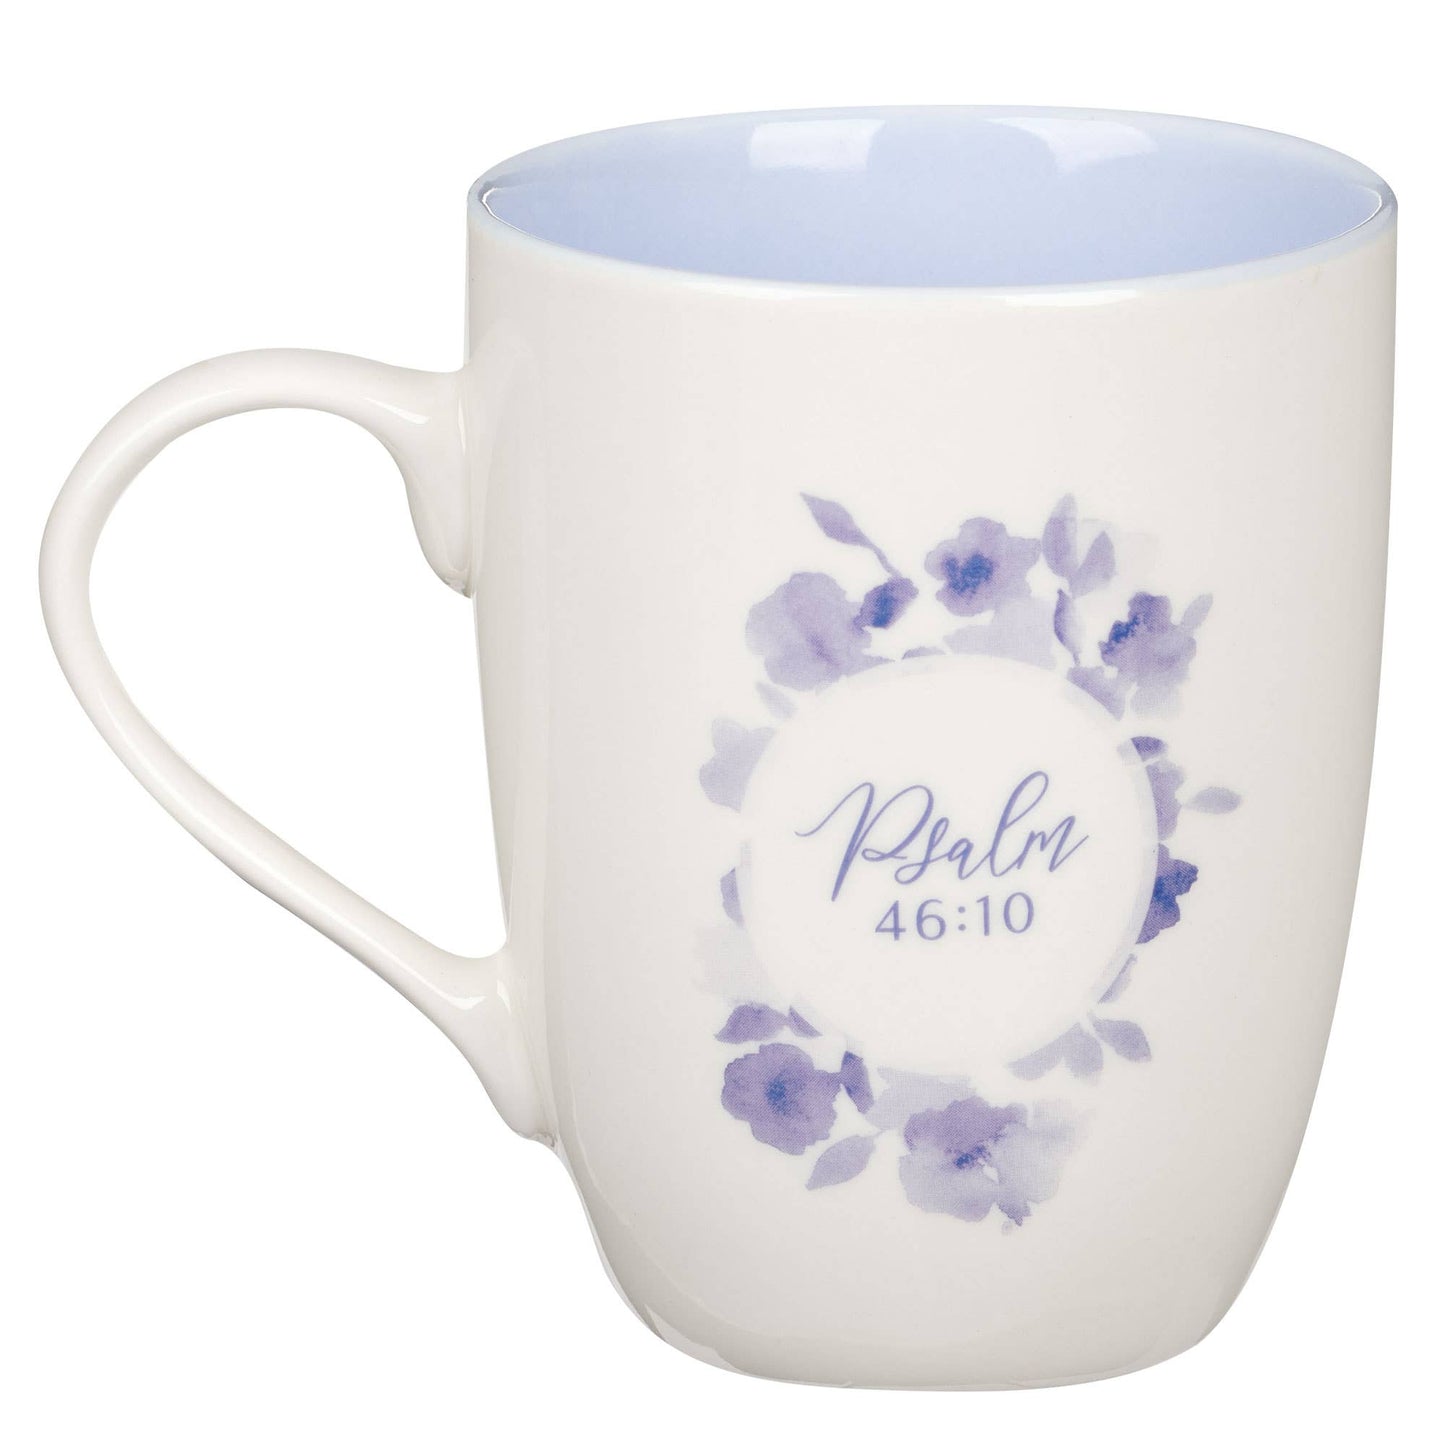 Mug Blue Floral Be Still Ps. 46:10